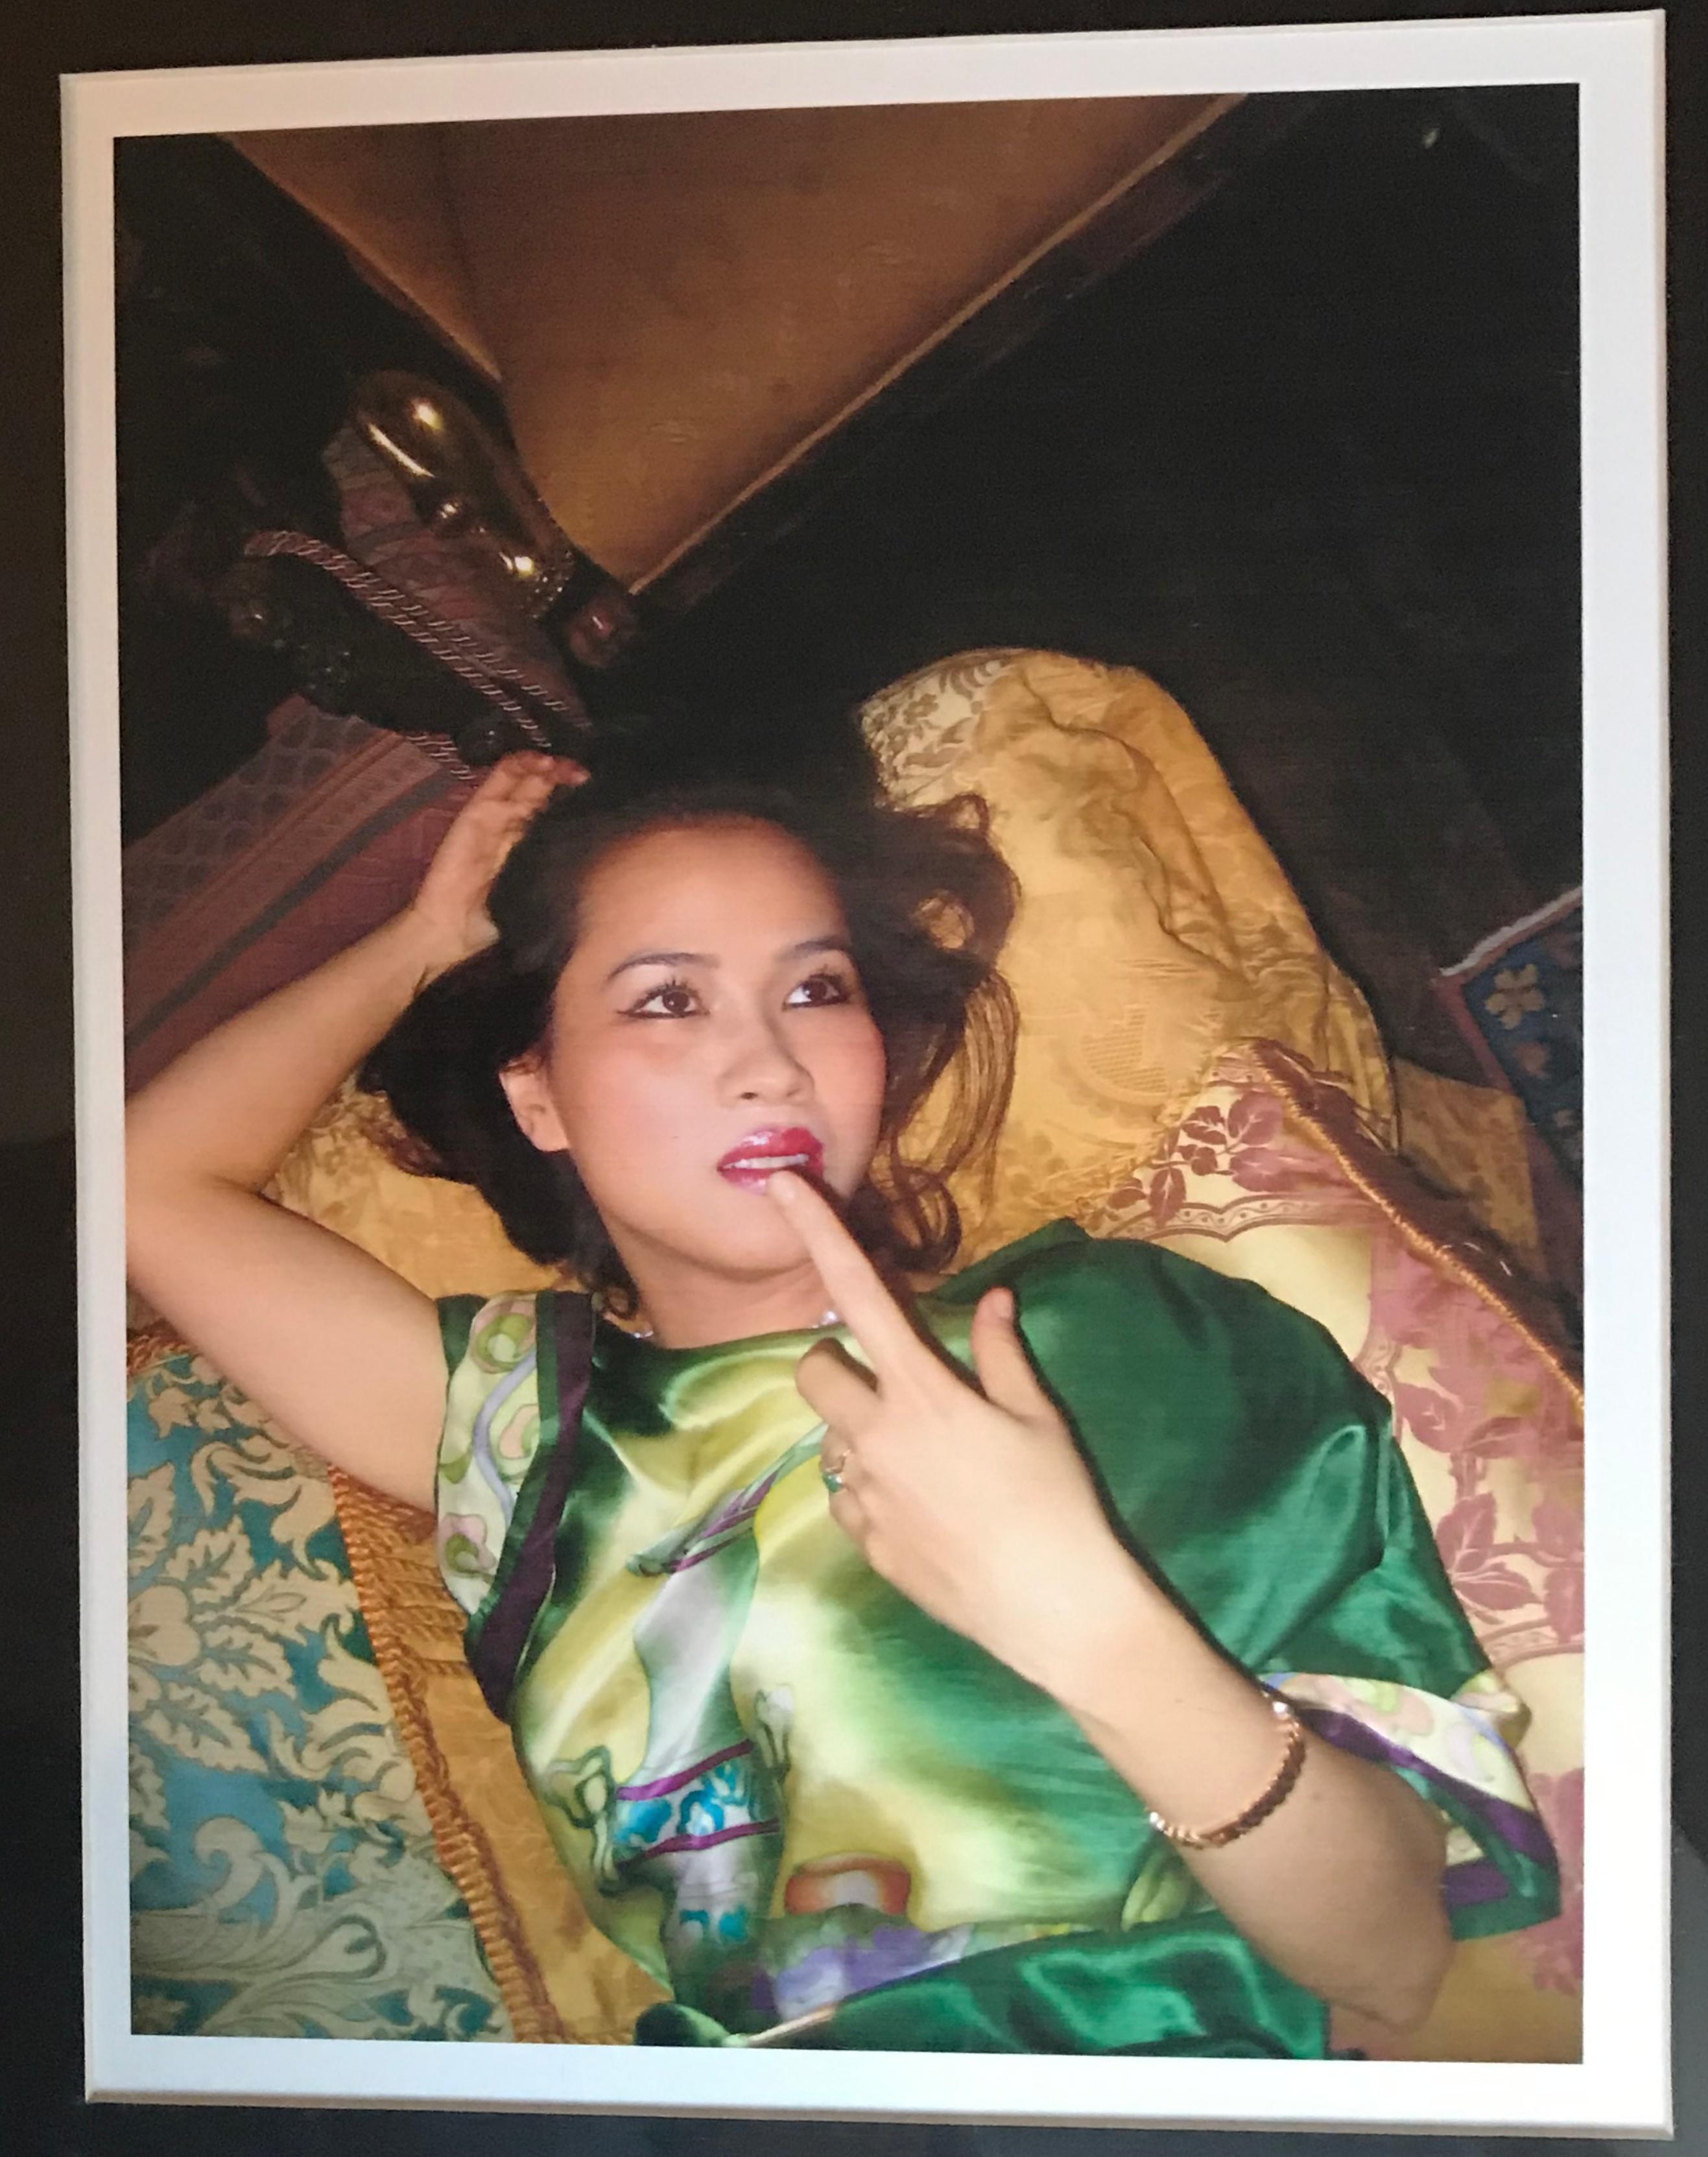 Peters Beard
Portraits de la pianiste de concert classique Chau-Giang Thi Nguyen dans un cadre d'artiste, 2006
Quatre (4) tirages chromogéniques séparés (A.I.C.) dans le cadre de l'artiste. Signé à la main
Signée et datée en gras au marqueur vert